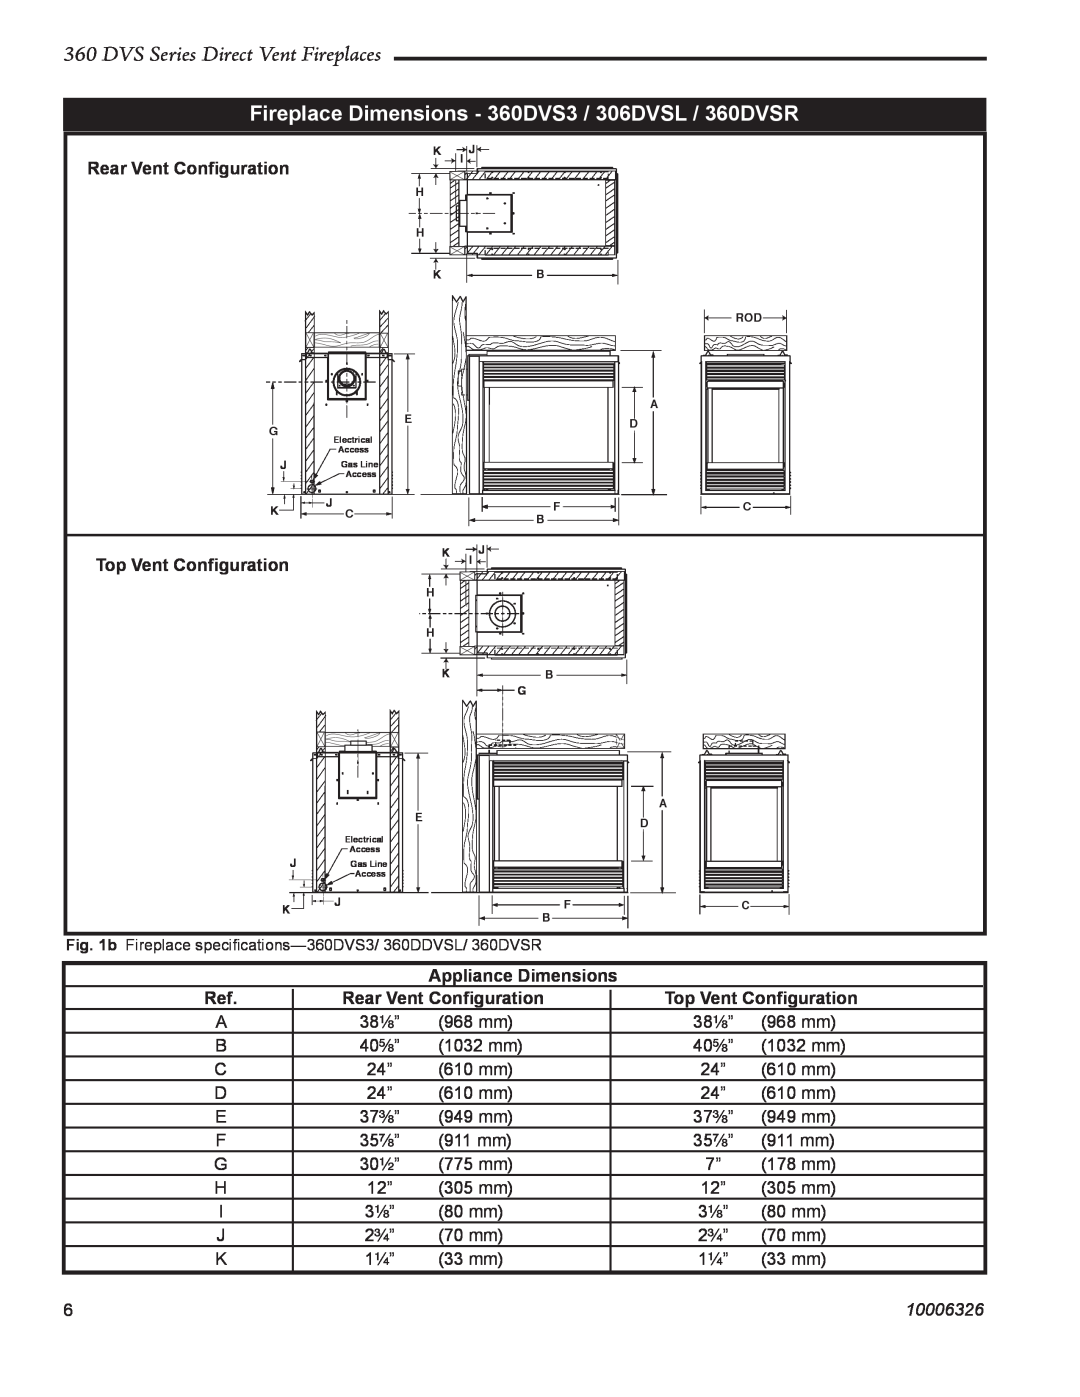 Majestic Appliances 360DVS3 DVS Series Direct Vent Fireplaces, Rear Vent Conﬁguration, Top Vent Conﬁguration, 10006326 